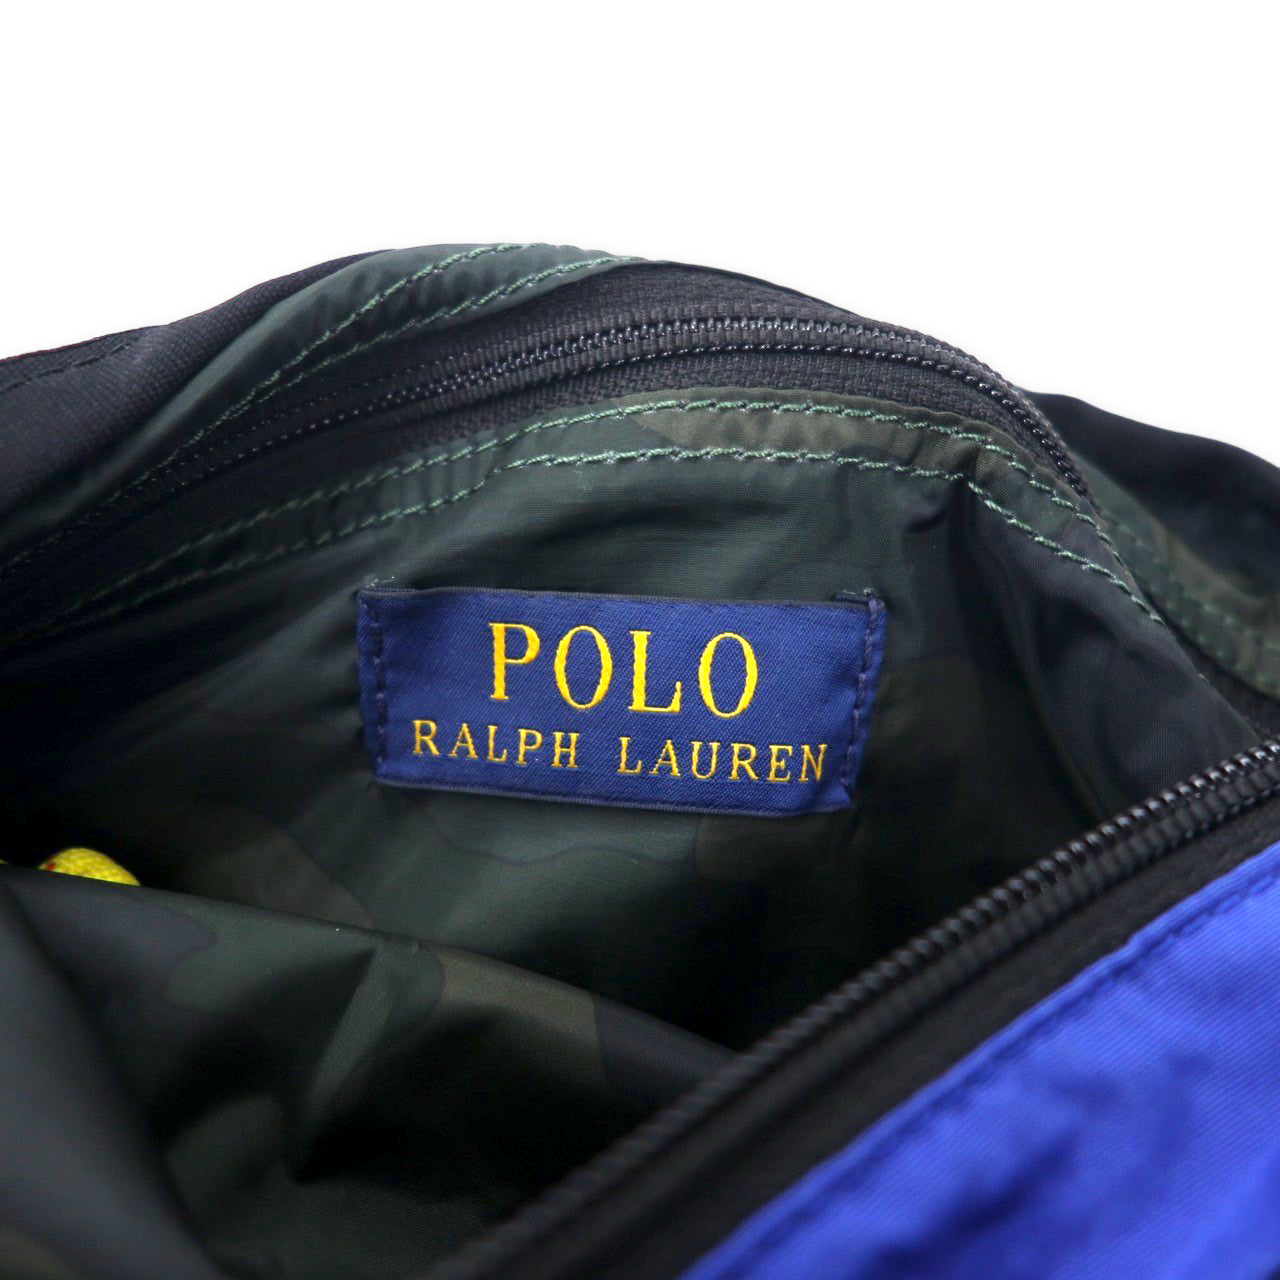 POLO RALPH LAUREN ライトウェイト マウンテン クロスボディバッグ ブルー コットン ナイロン スモールポニー刺繍